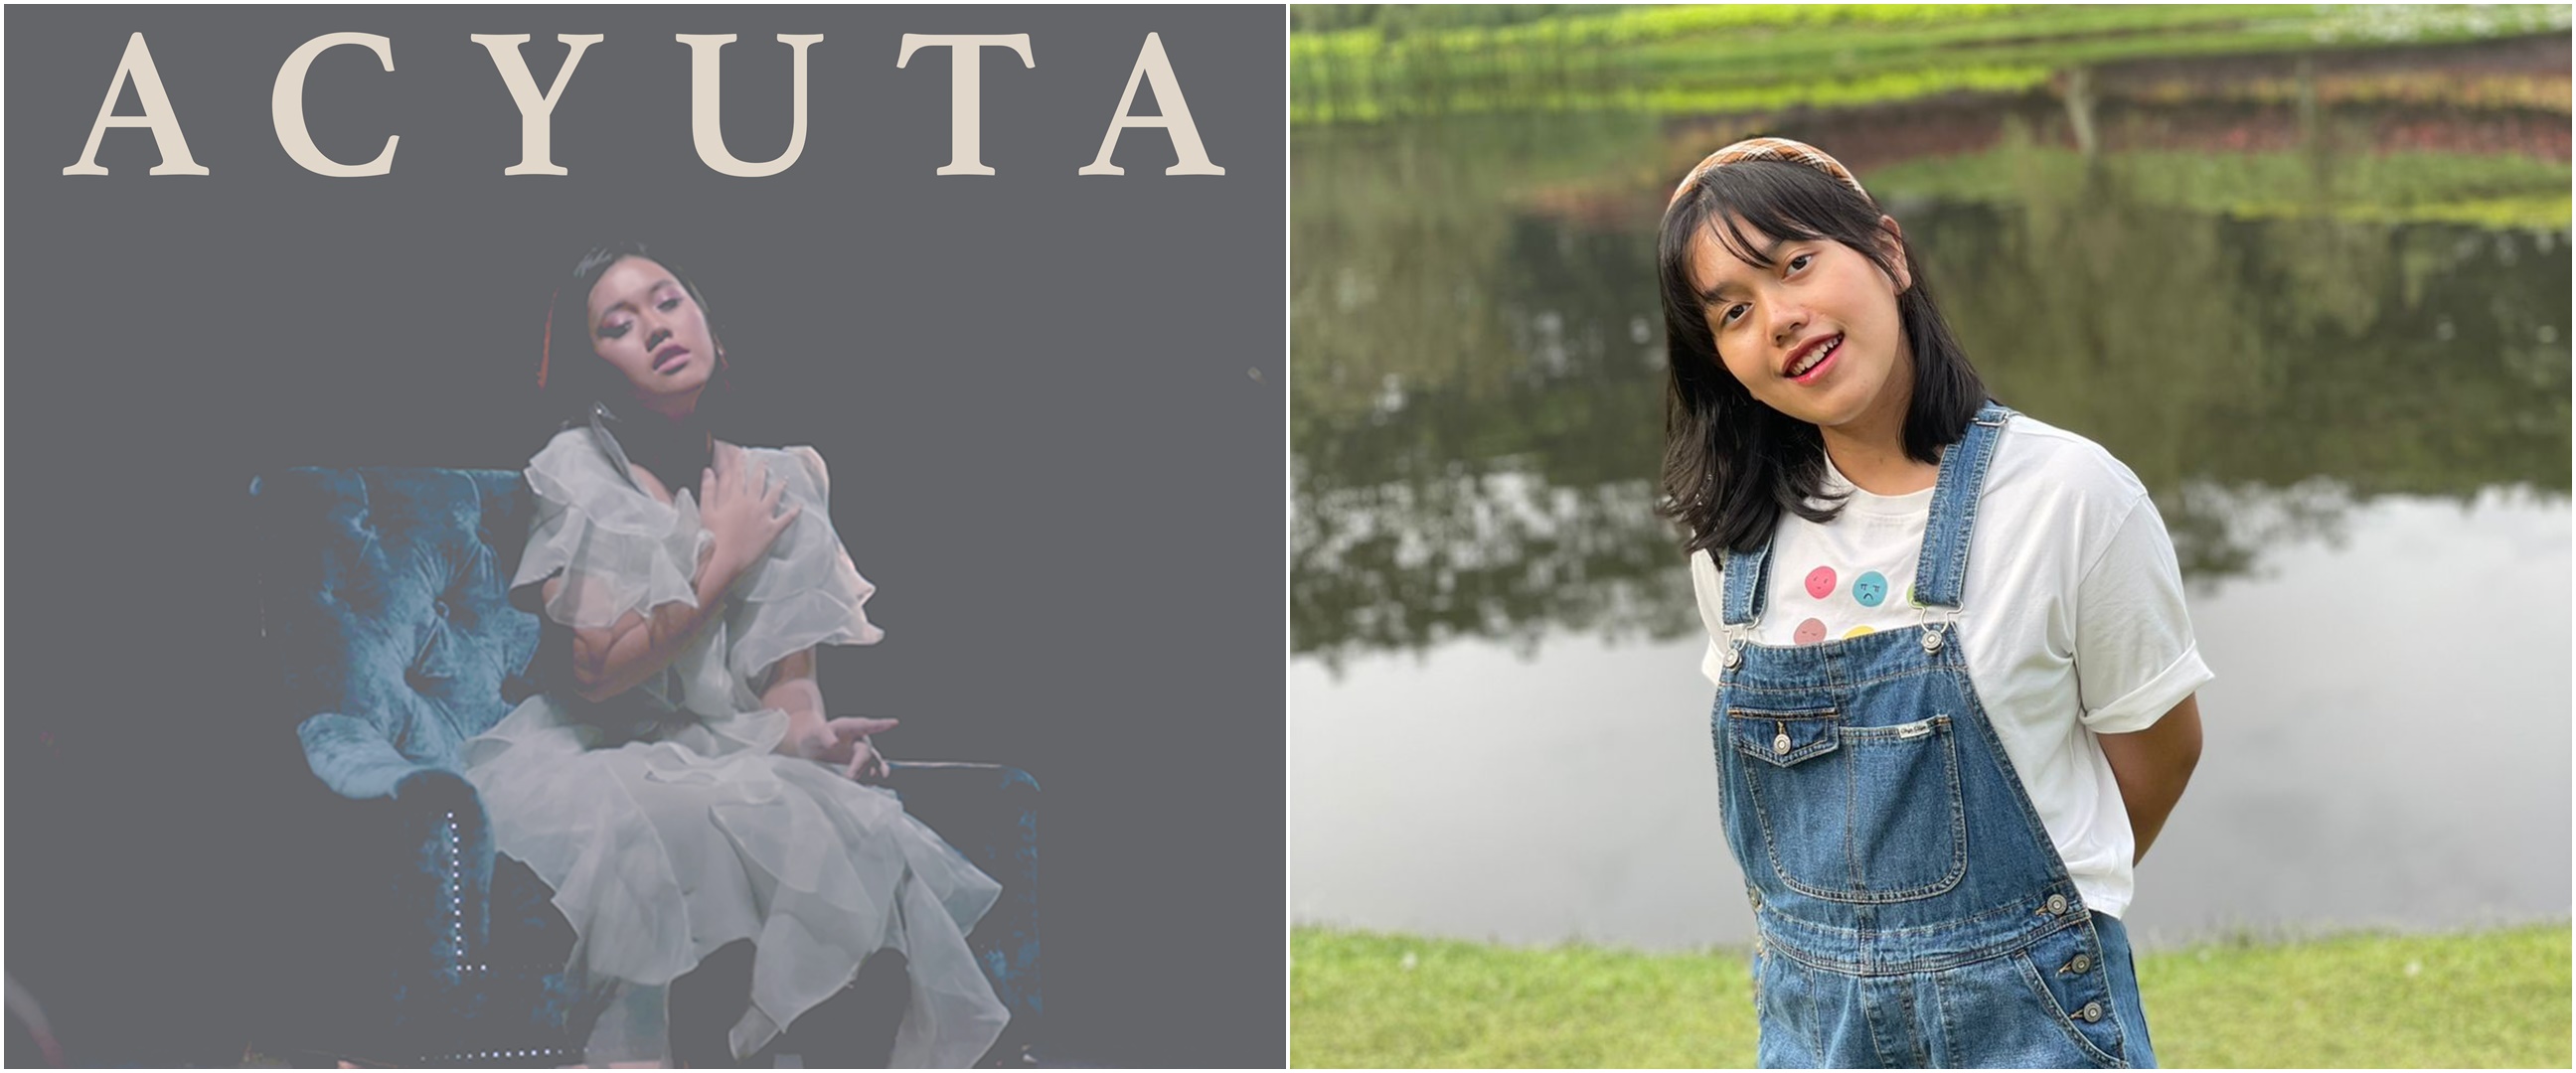 Rilis single perdana "Keluh", Acyuta curhat soal sulitnya melepaskan